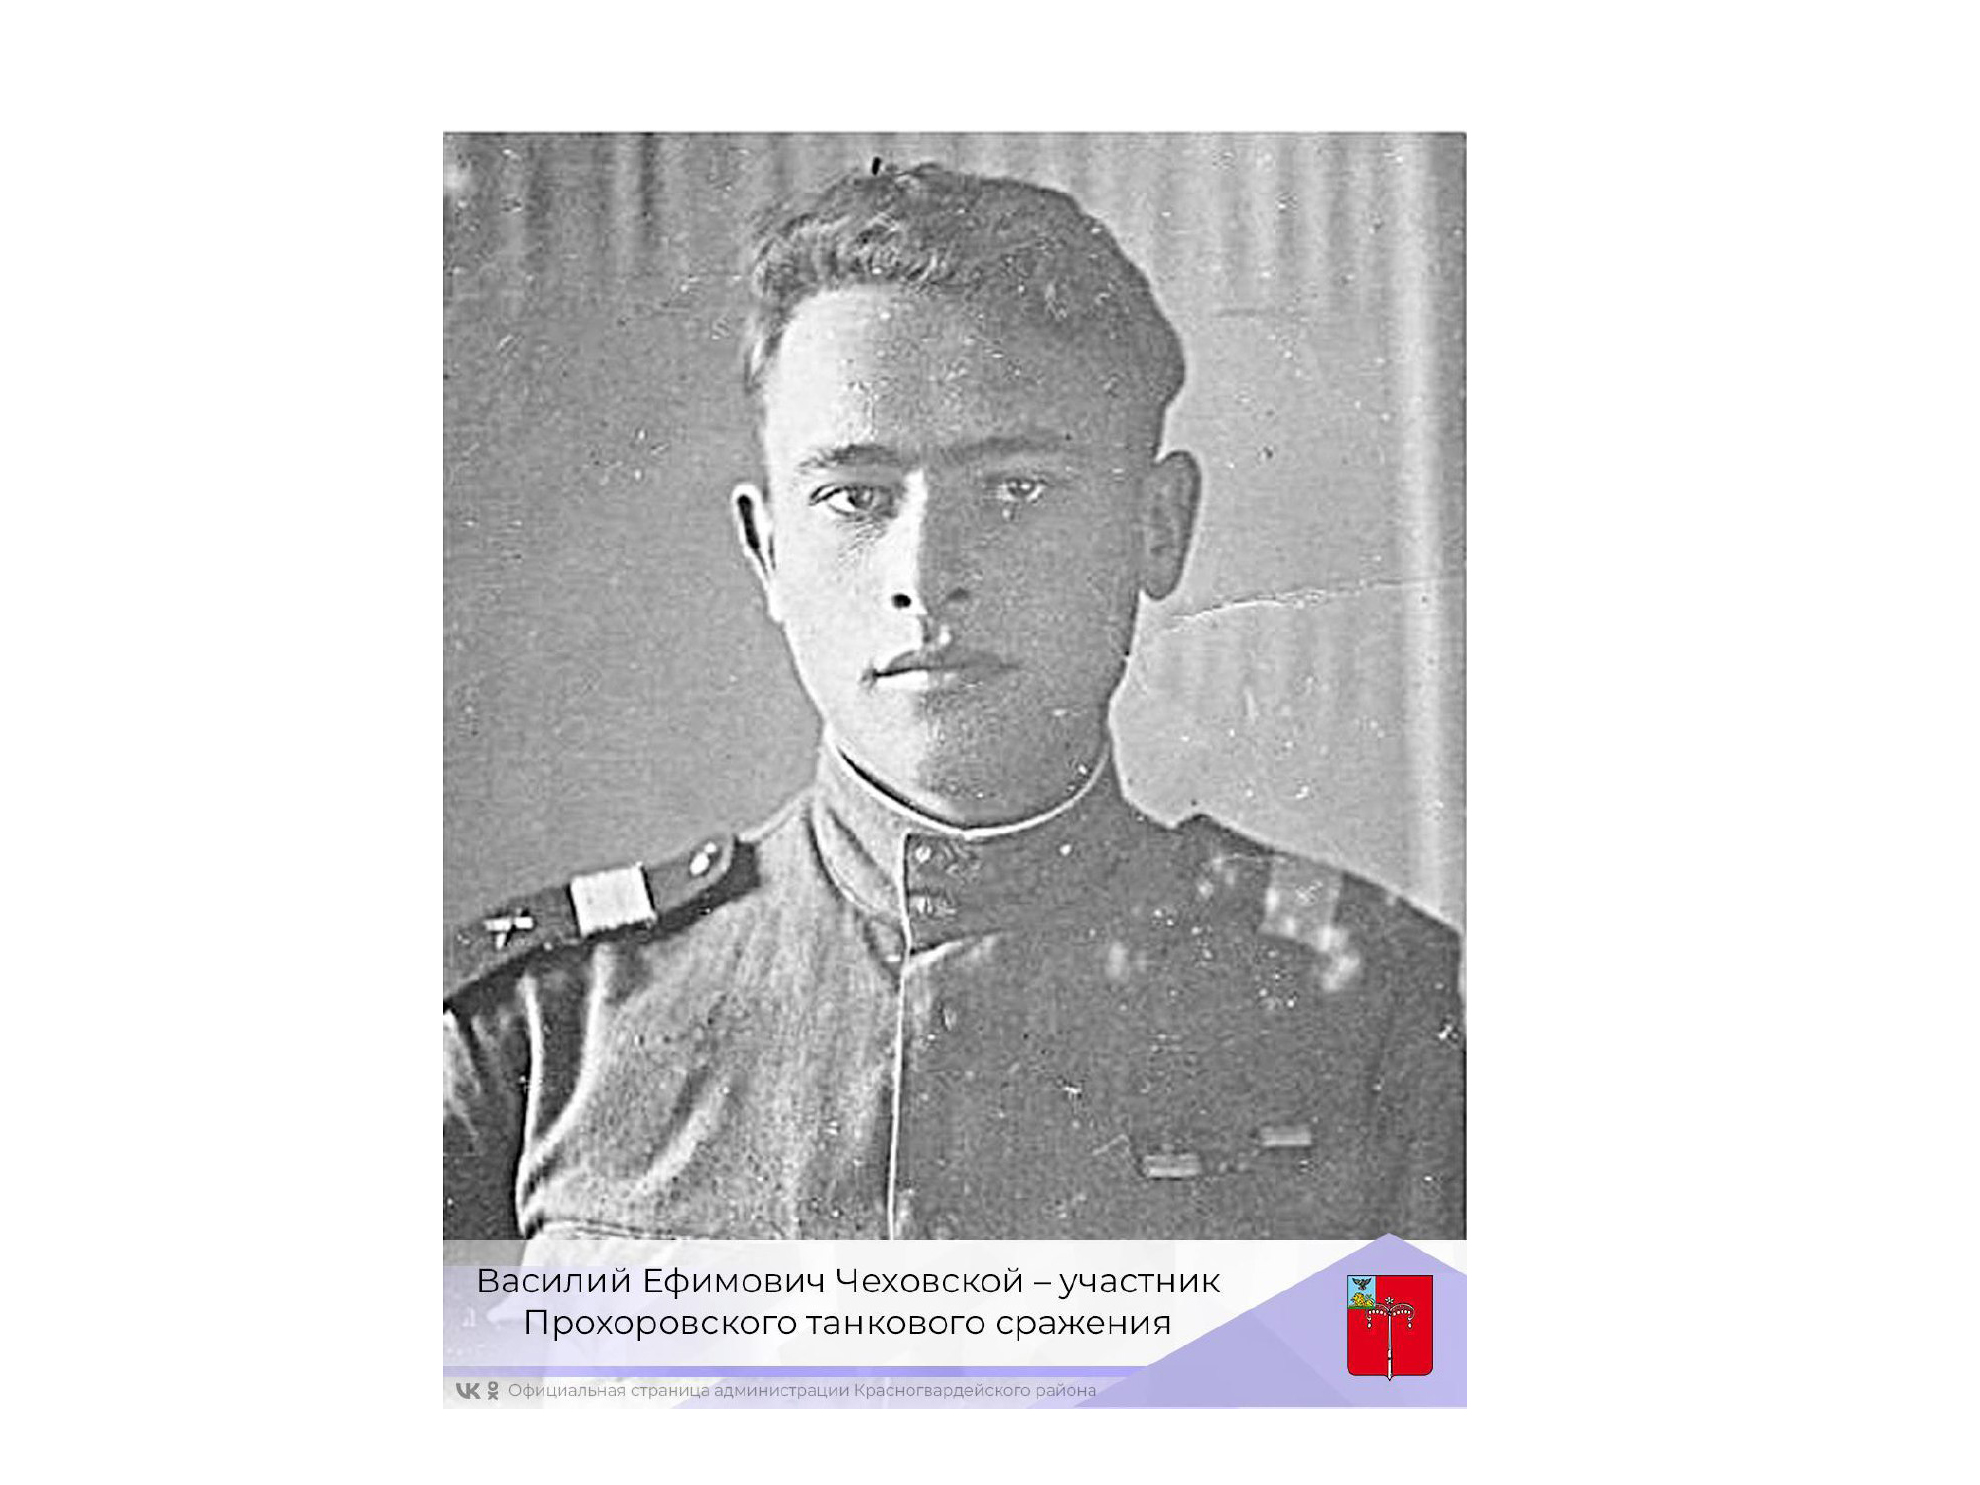 Василий Ефимович Чеховской – участник Прохоровского танкового сражения.